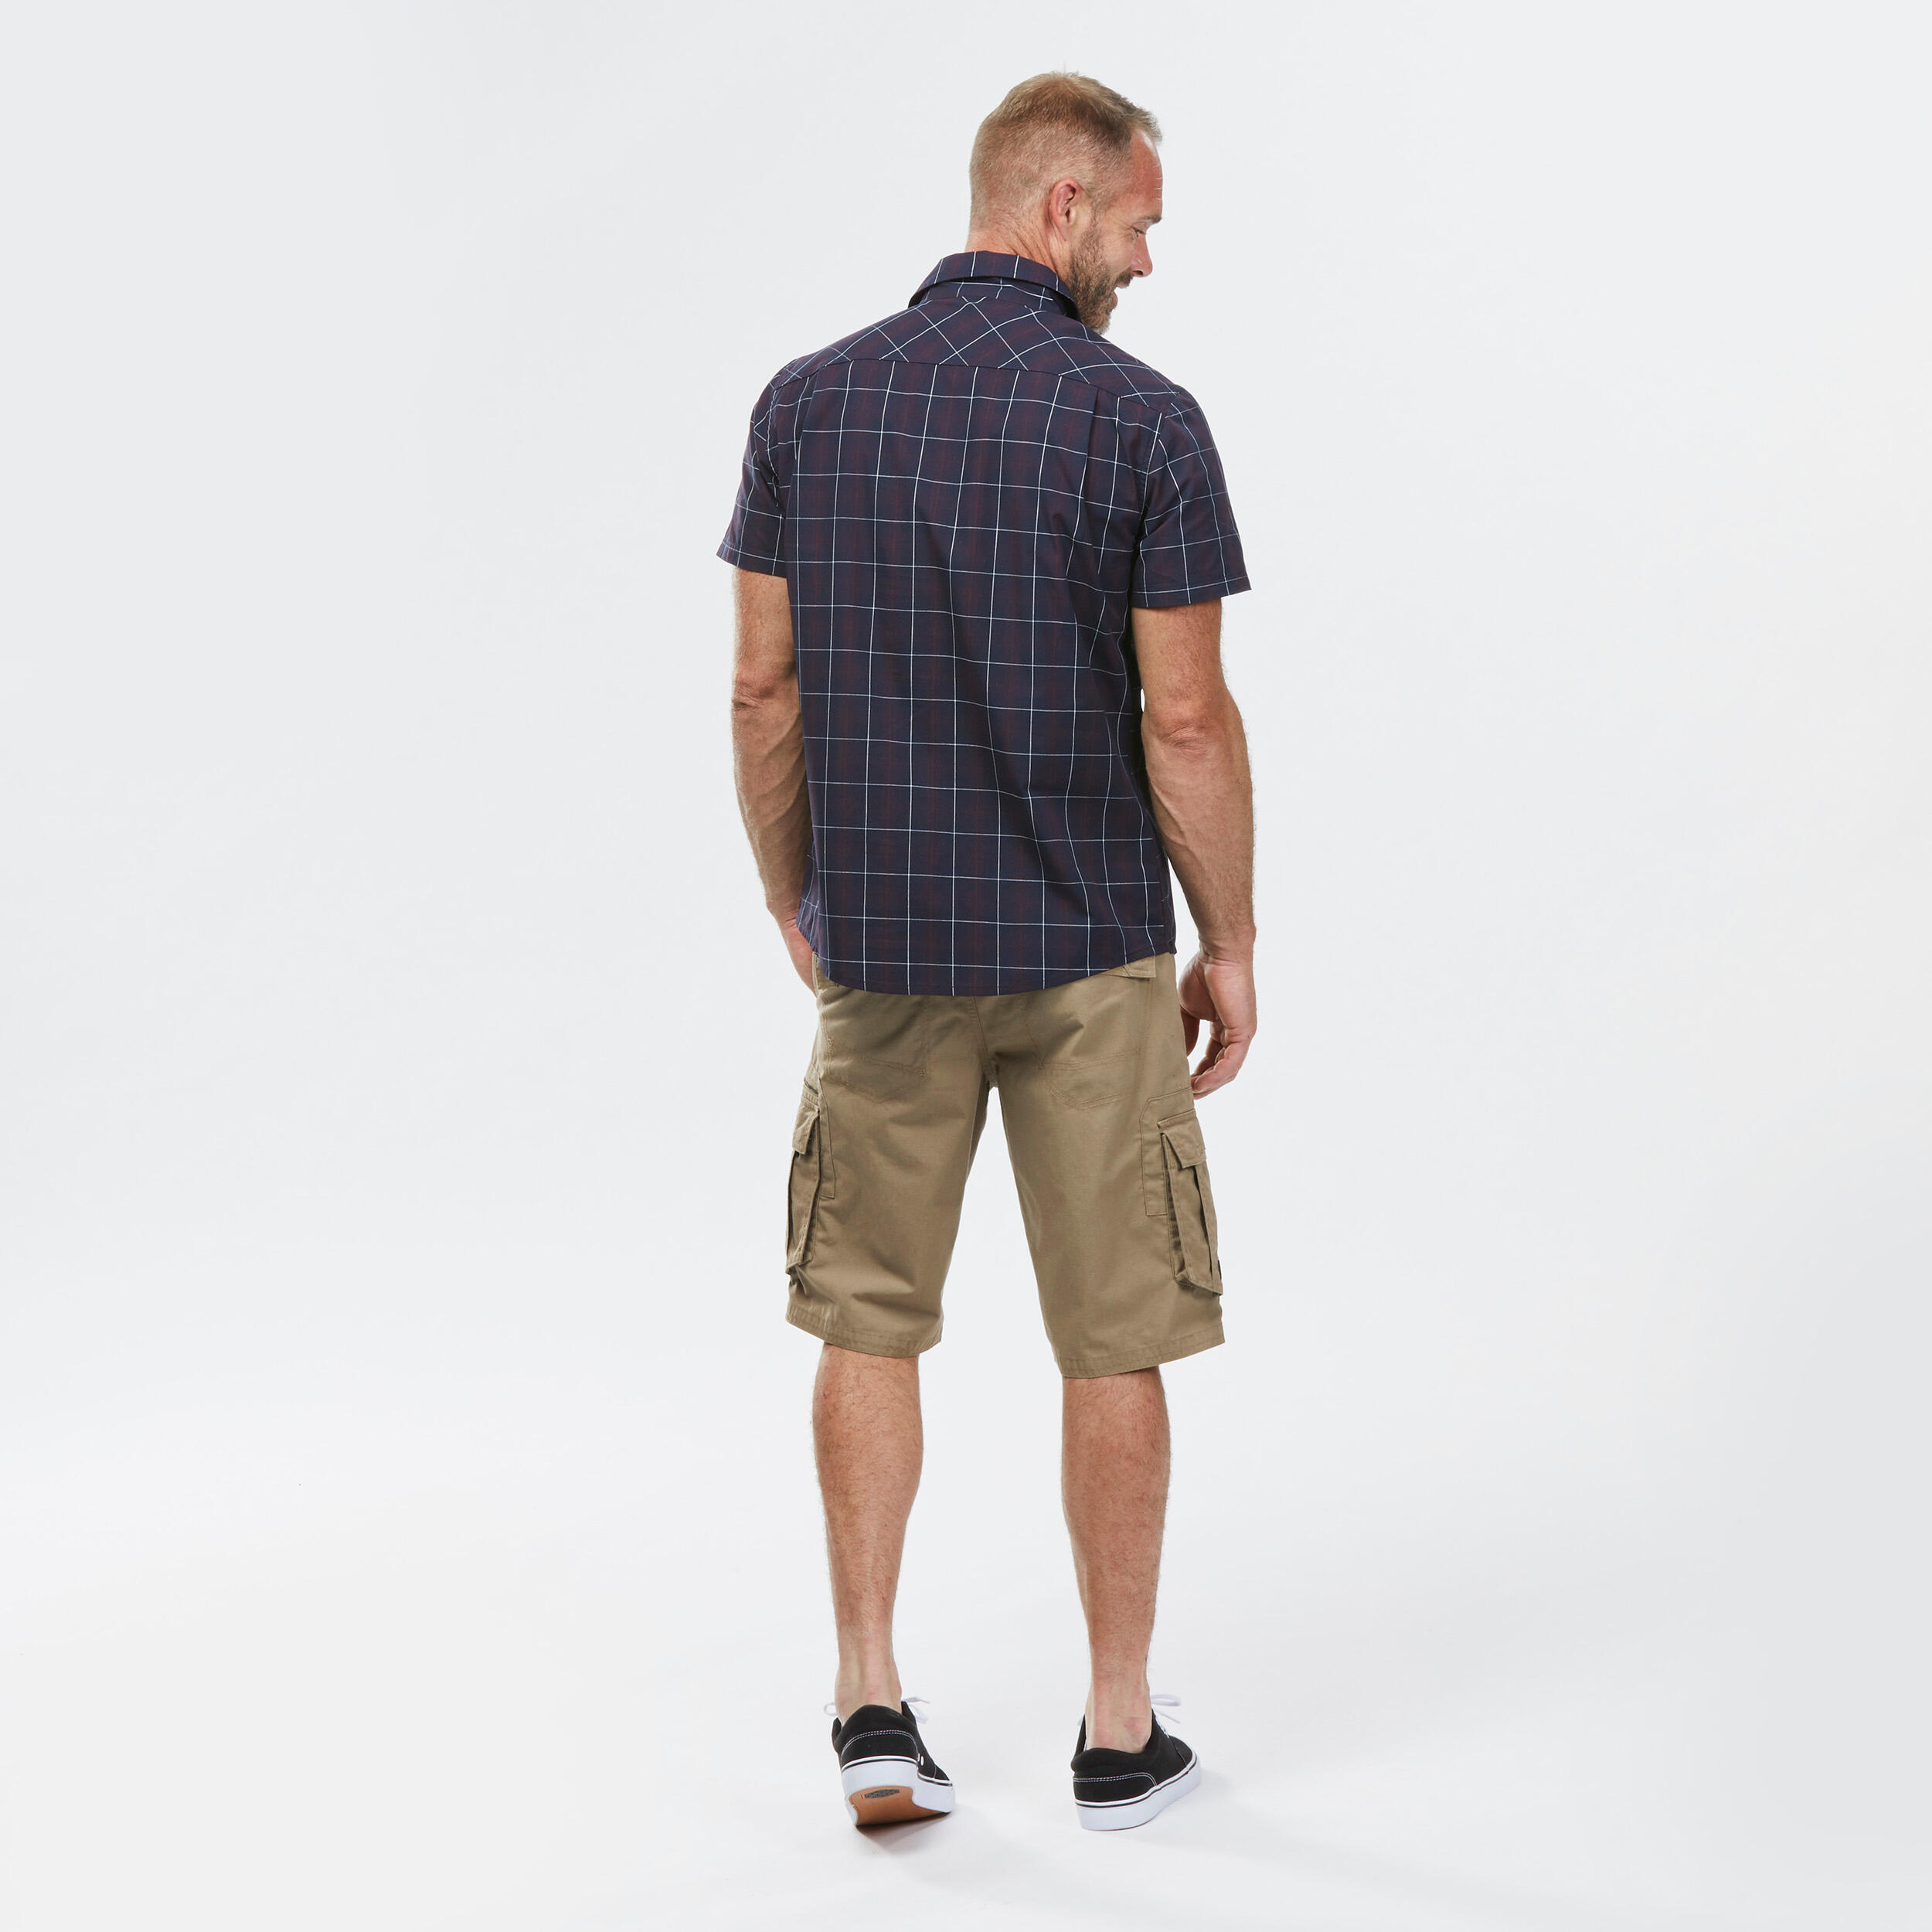 Men’s short-sleeved plaid travel trekking shirt TRAVEL 100 black 7/7